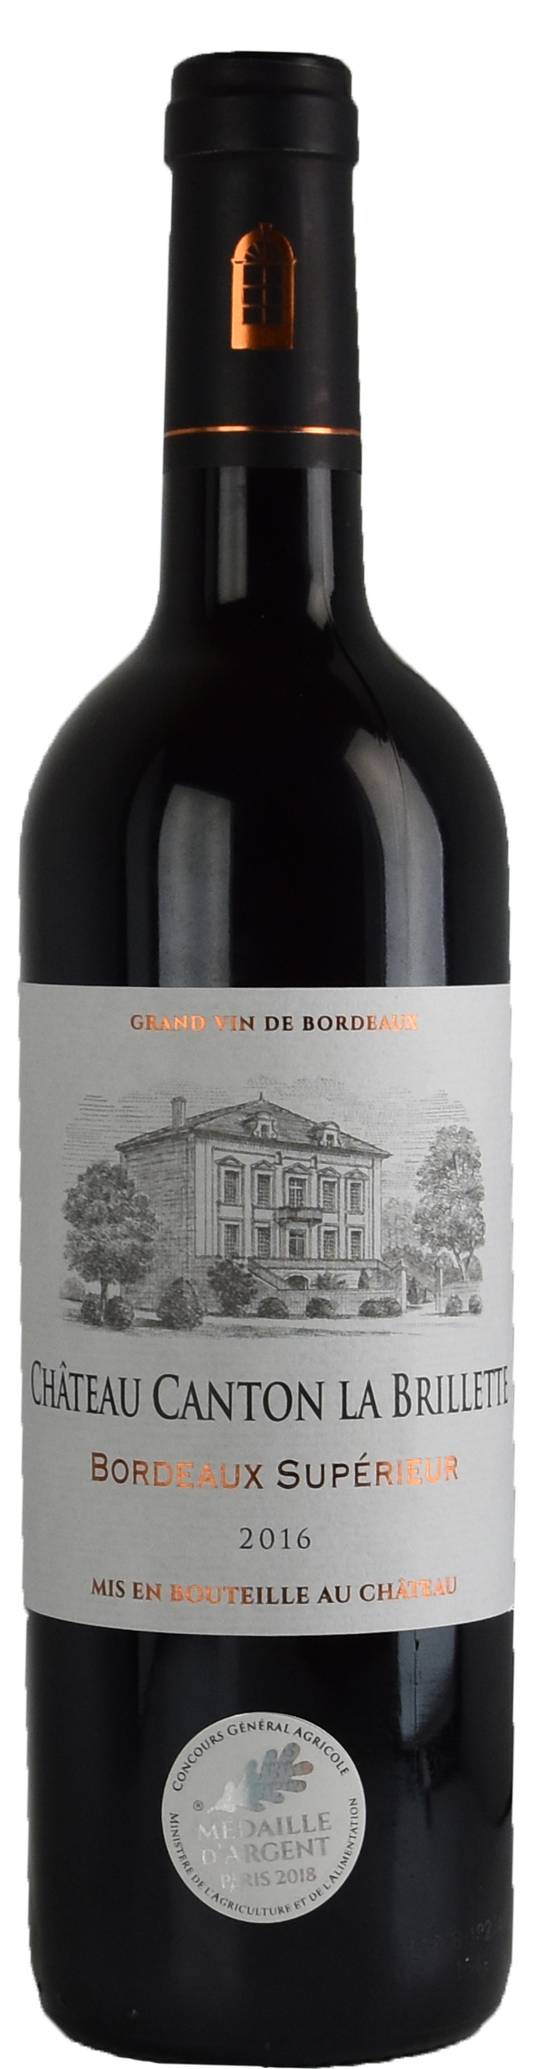 Château Canton La Brillette - Bordeaux supérieur vin rouge 2016